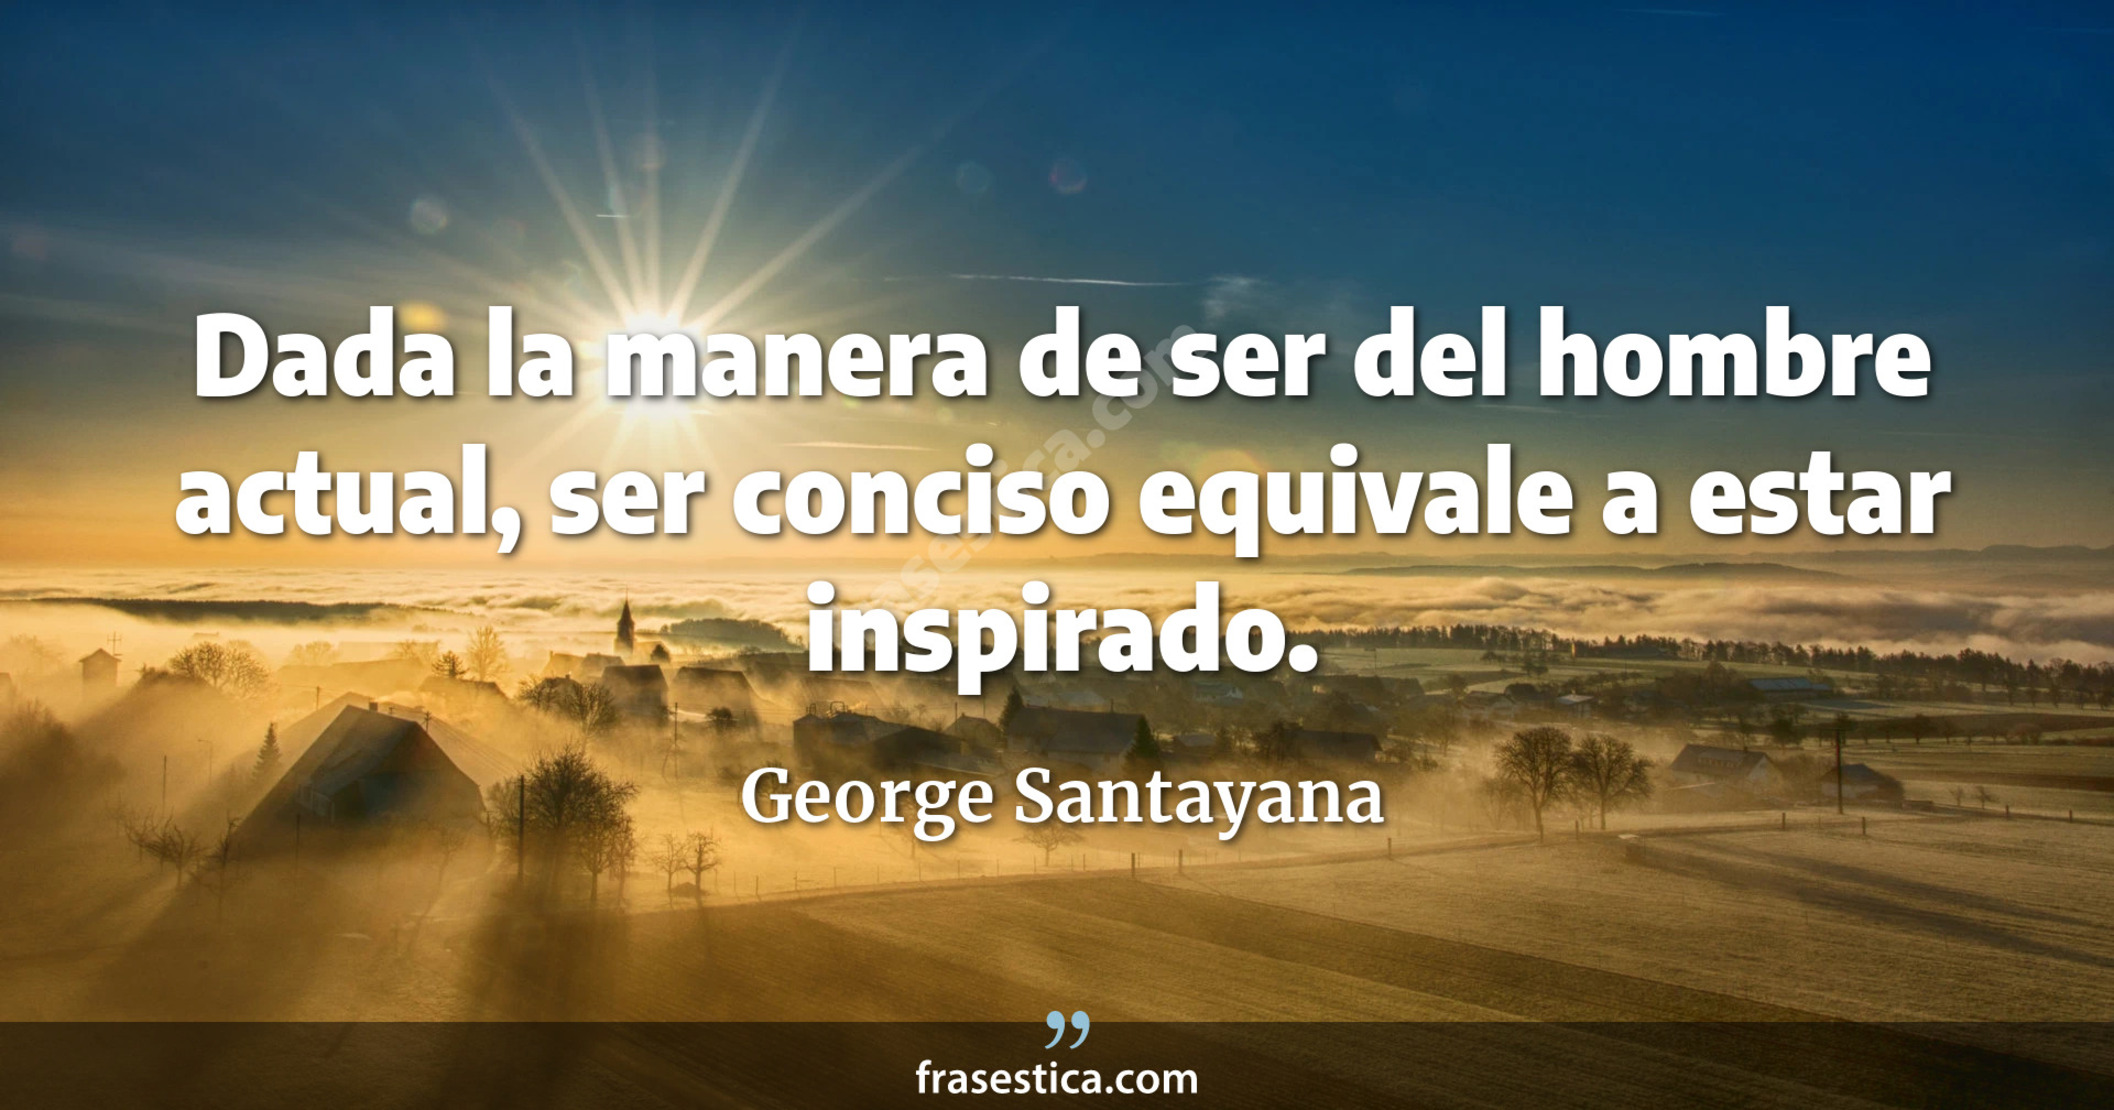 Dada la manera de ser del hombre actual, ser conciso equivale a estar inspirado. - George Santayana